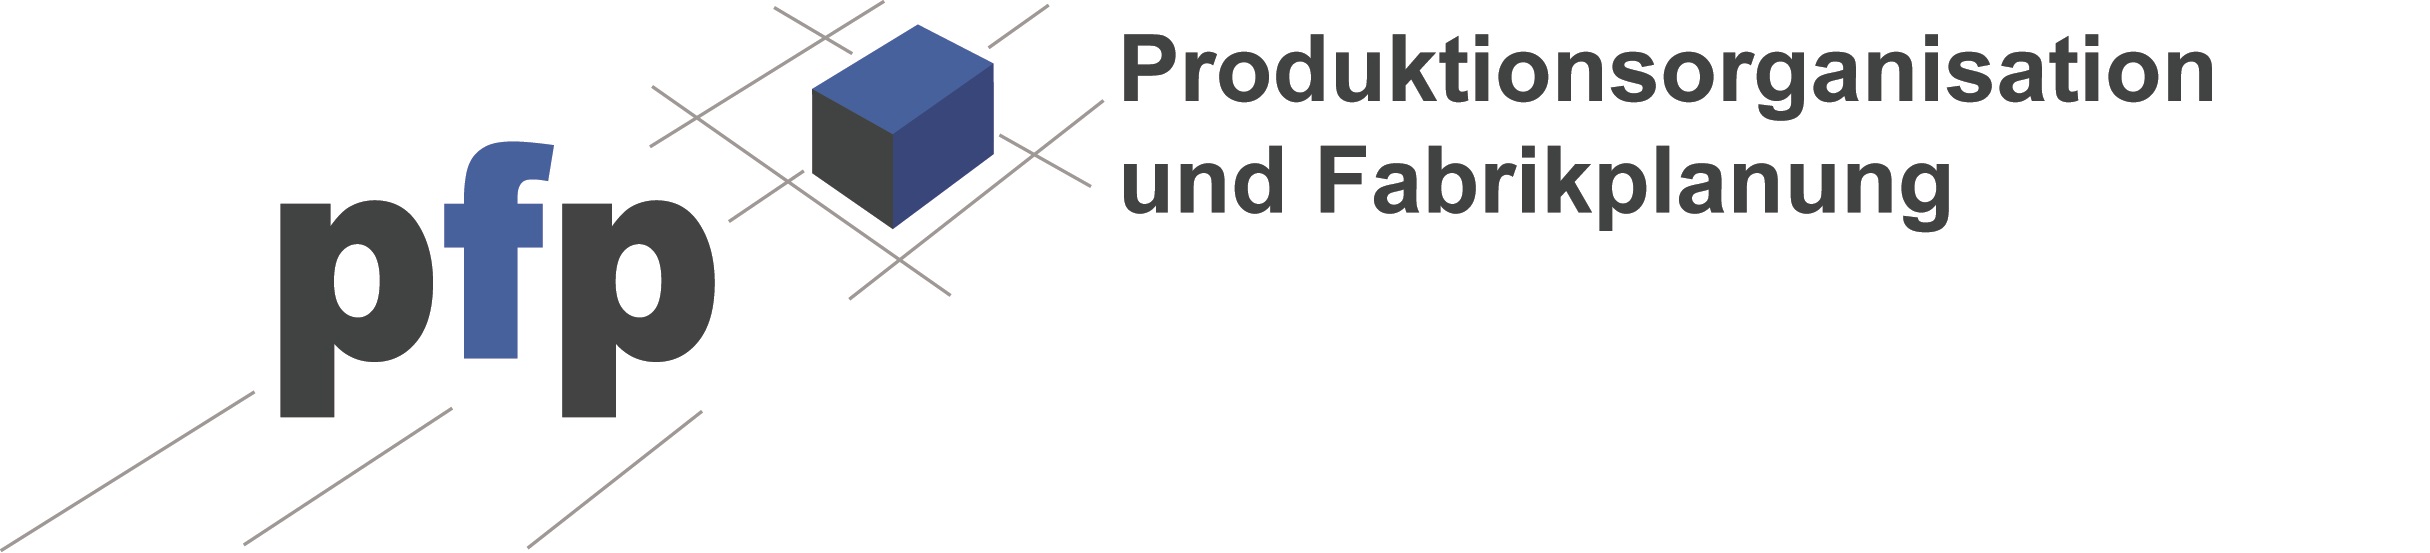 https://www.uni-kassel.de/maschinenbau/institute/ipl/produktionsorganisation-und-fabrikplanung/wir-ueber-uns/mitarbeiterinnen/person/178-Sigrid-Wenzel.html